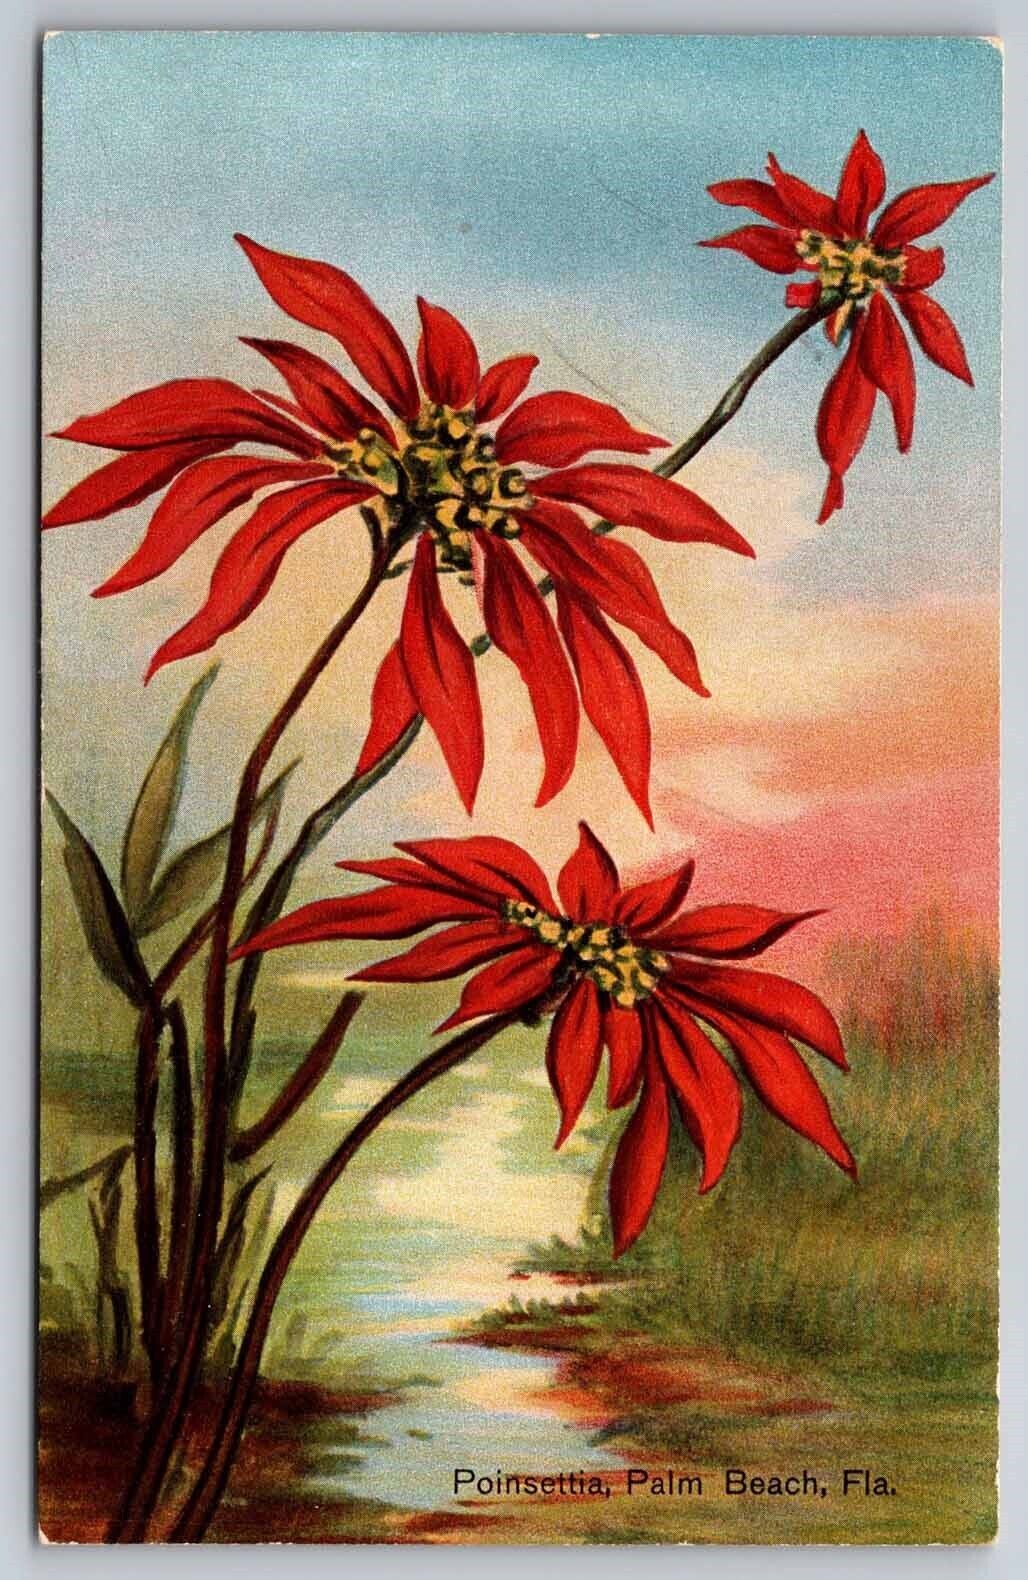 eStampsNet - Postcard West Palm Beach FL c1910 Poinsettia Flower H.A. Bennett 